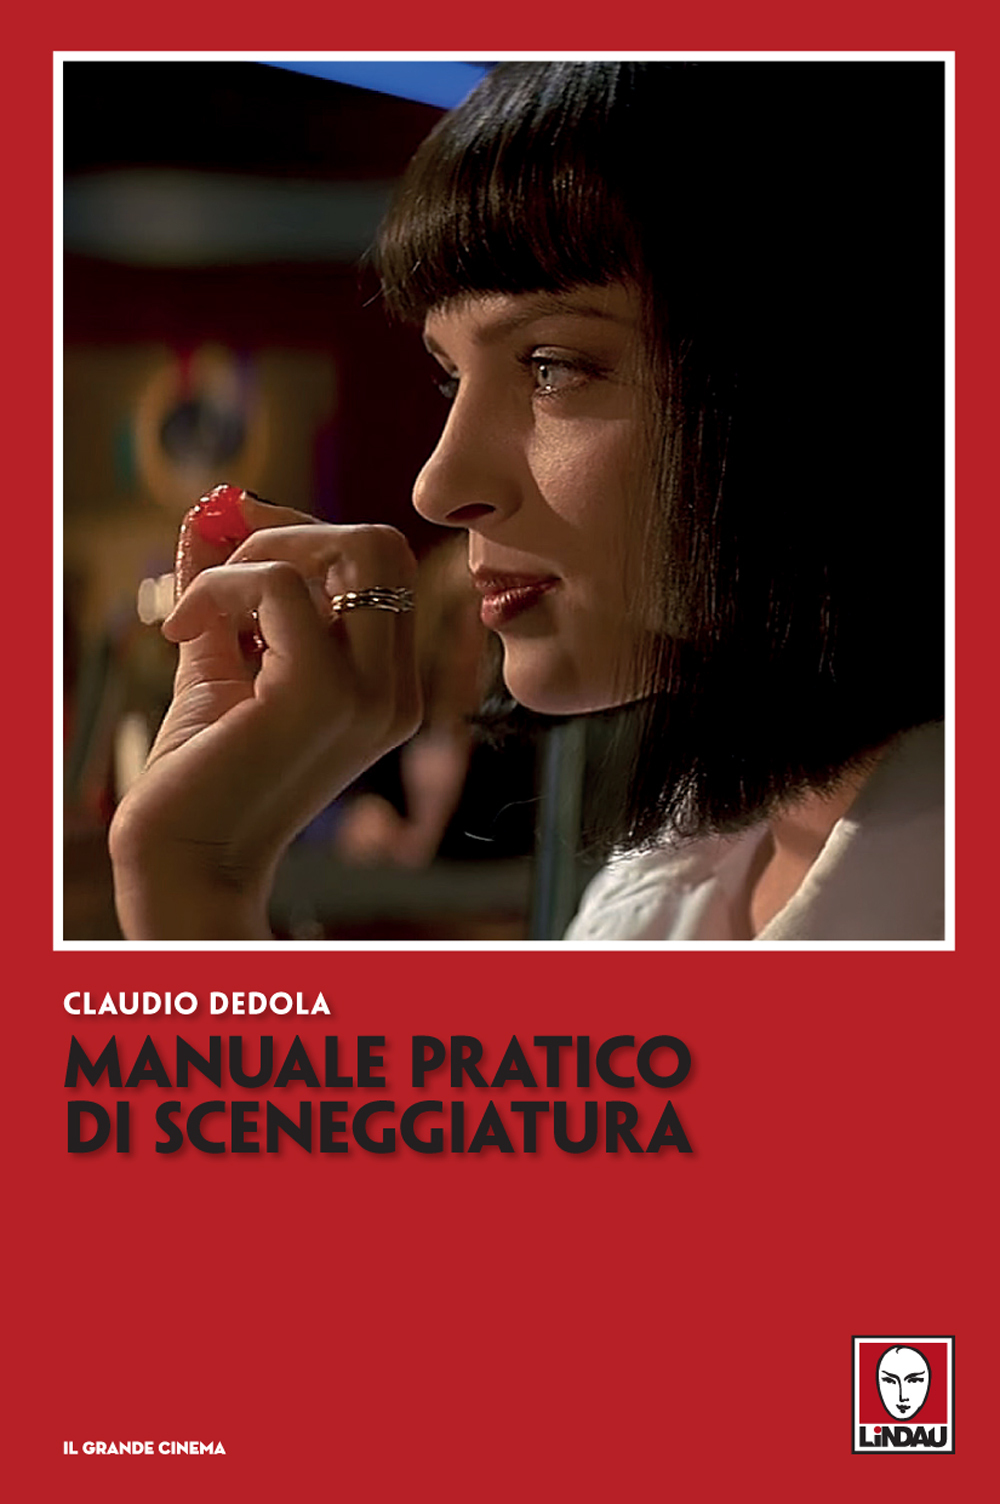 Manuale pratico di sceneggiatura di Claudio Dedola